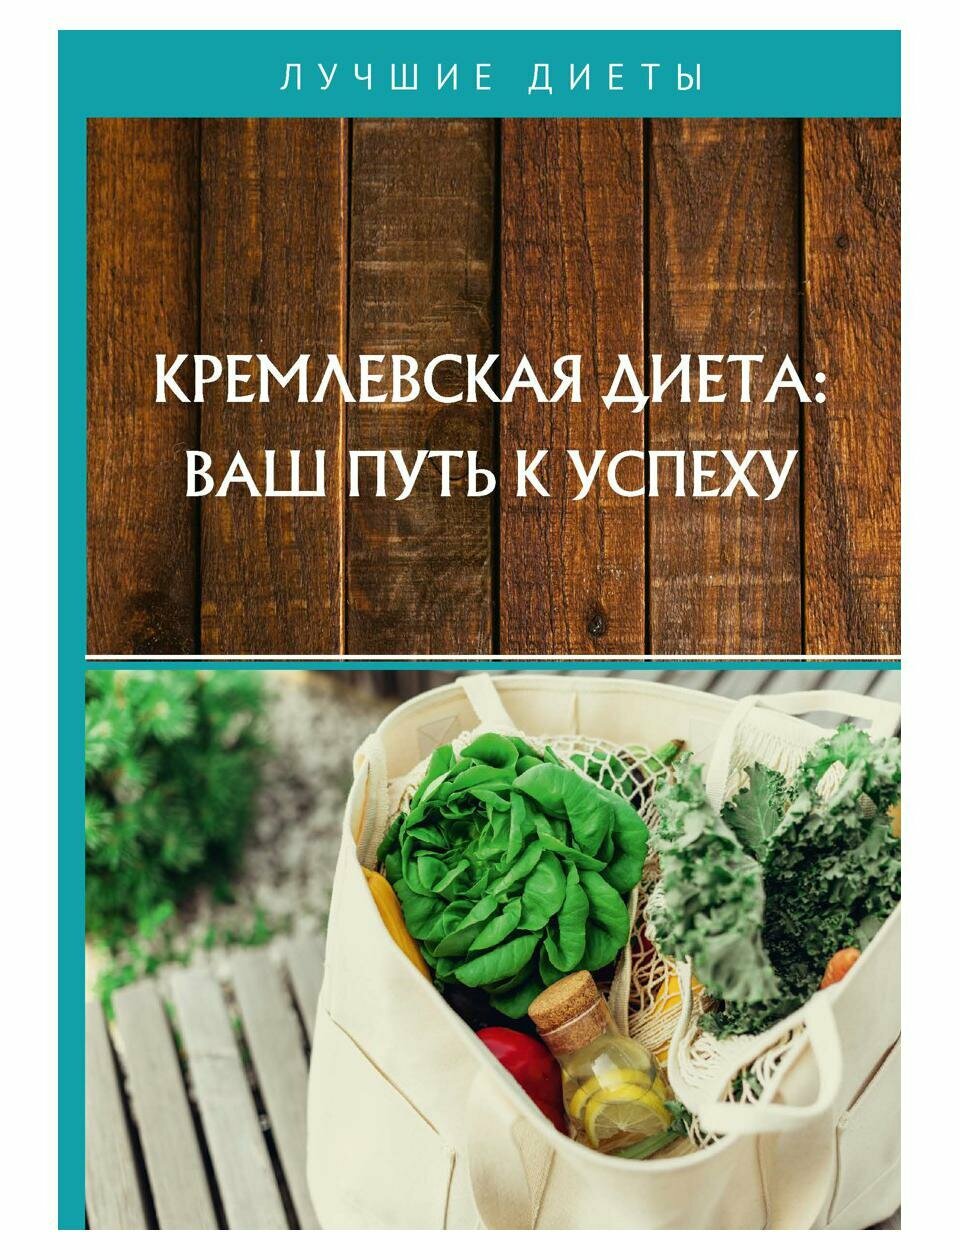 Кремлевская диета: ваш путь к успеху - фото №2